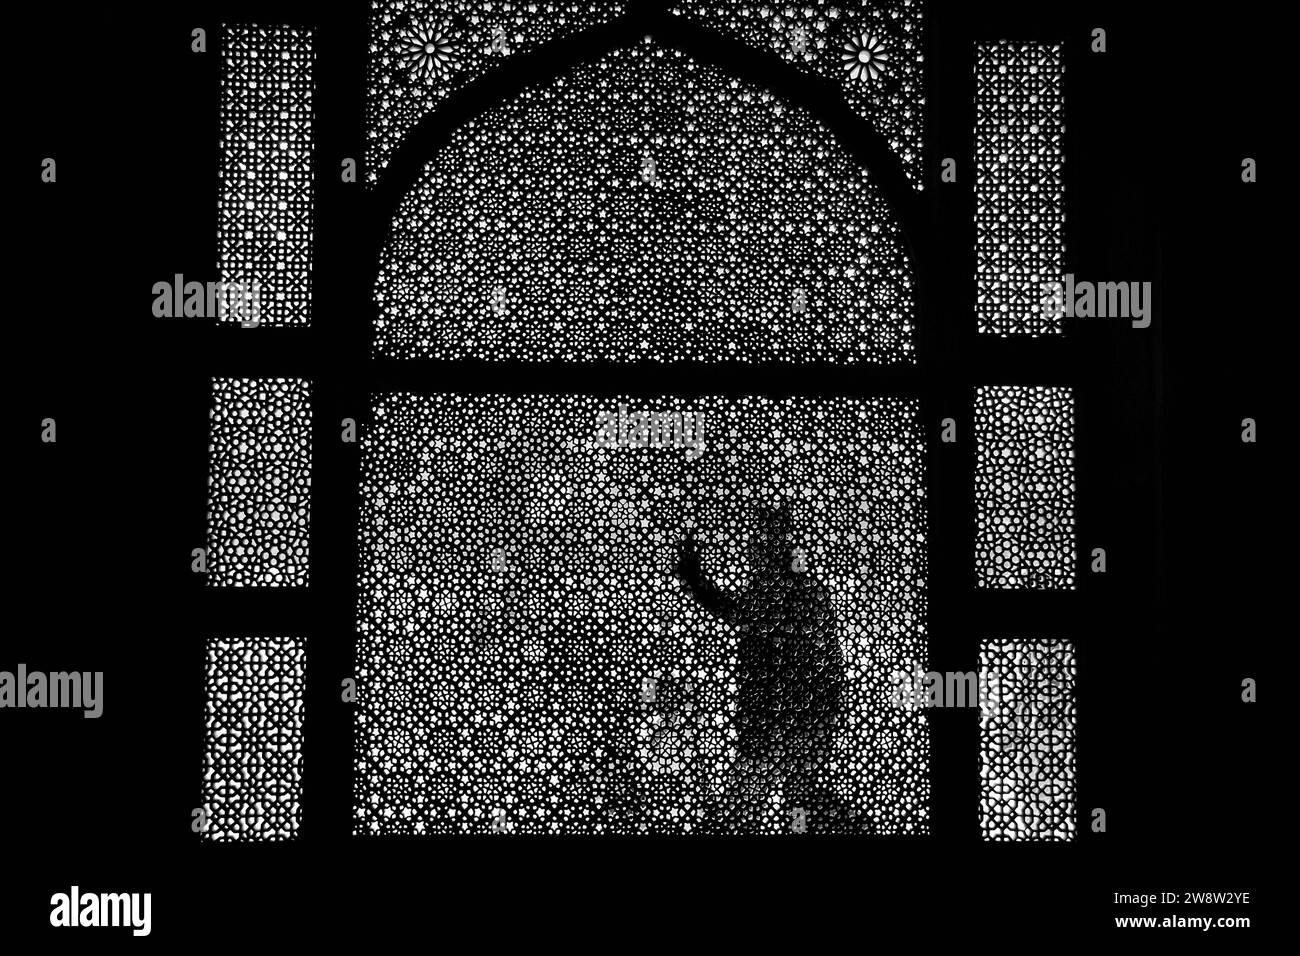 JAMA Masjid (Moschee) Komplex, Fatehpur Sikri, Uttar Pradesh, Indien Stockfoto